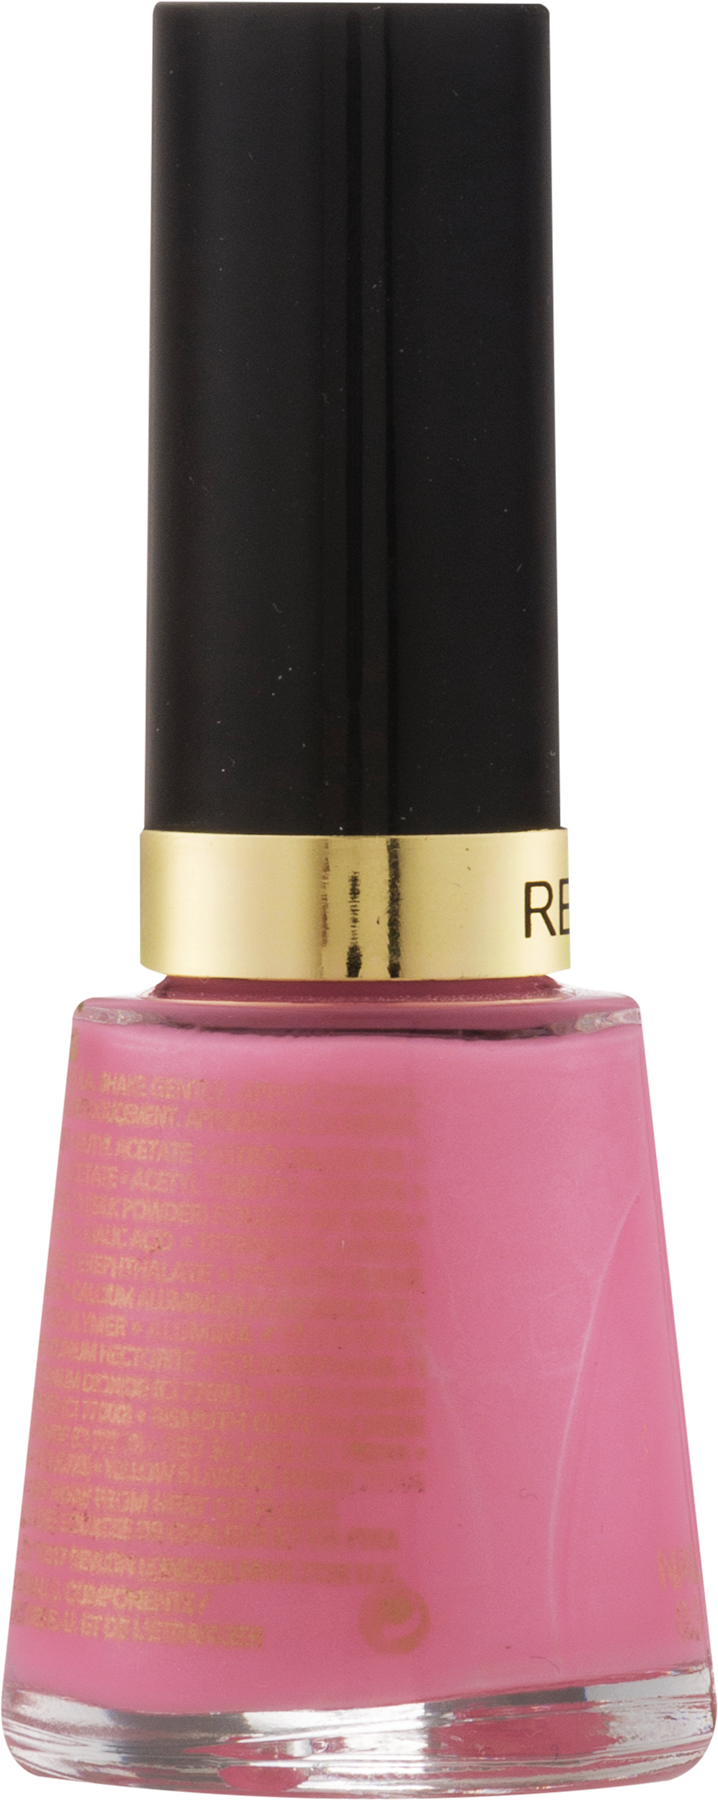 Revlon Nail Enamel - Posh Pink - image 4 of 4